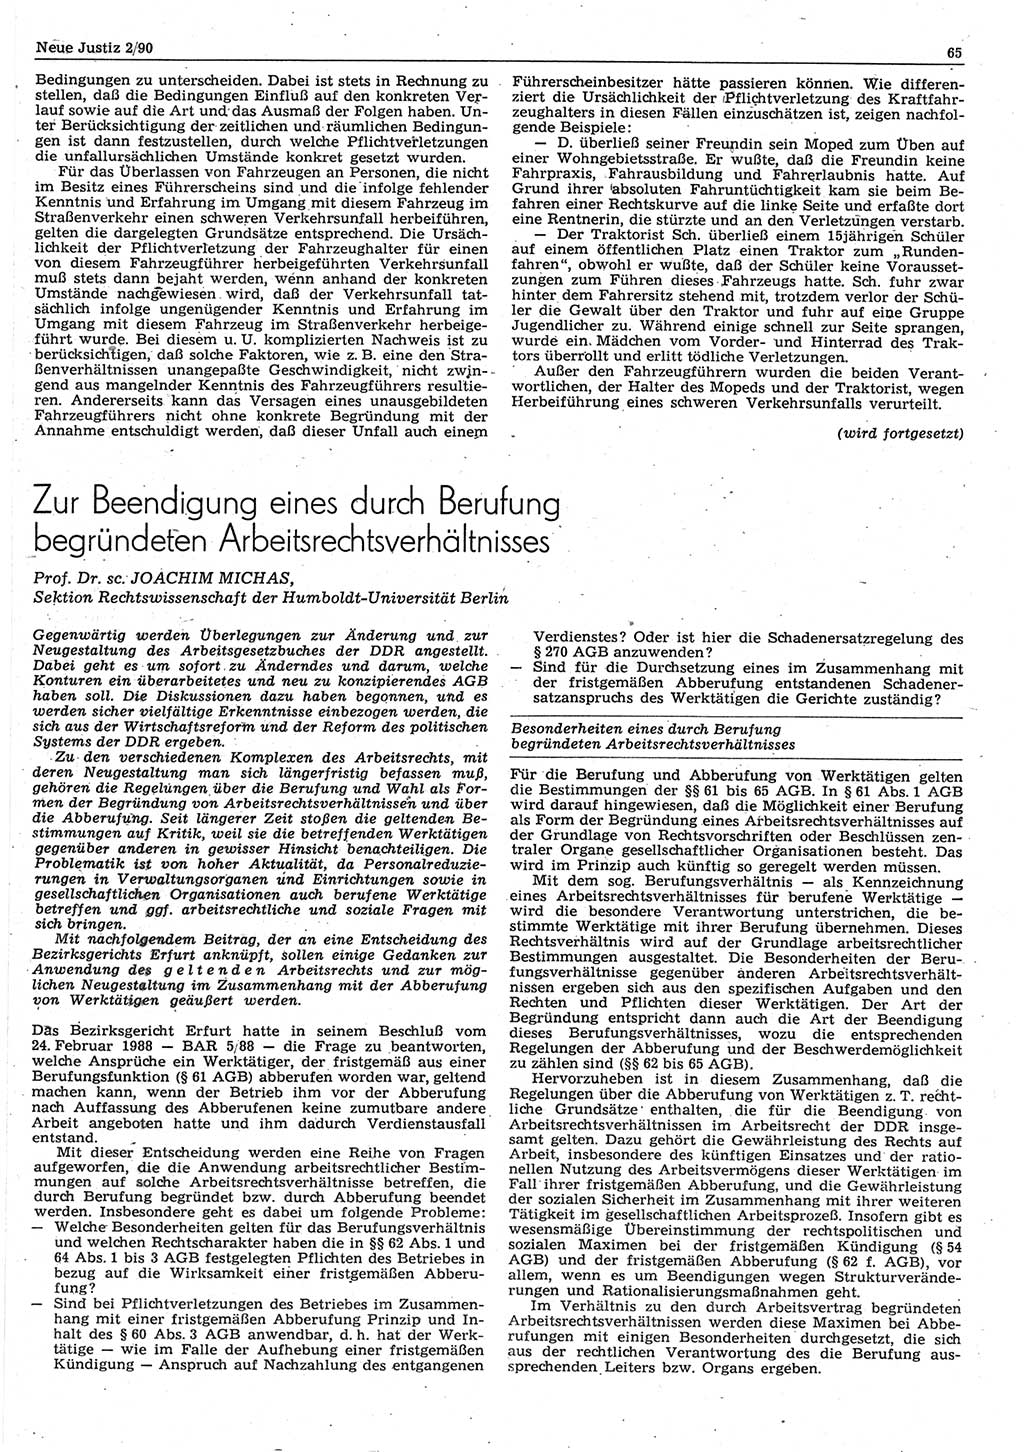 Neue Justiz (NJ), Zeitschrift für Rechtsetzung und Rechtsanwendung [Deutsche Demokratische Republik (DDR)], 44. Jahrgang 1990, Seite 65 (NJ DDR 1990, S. 65)